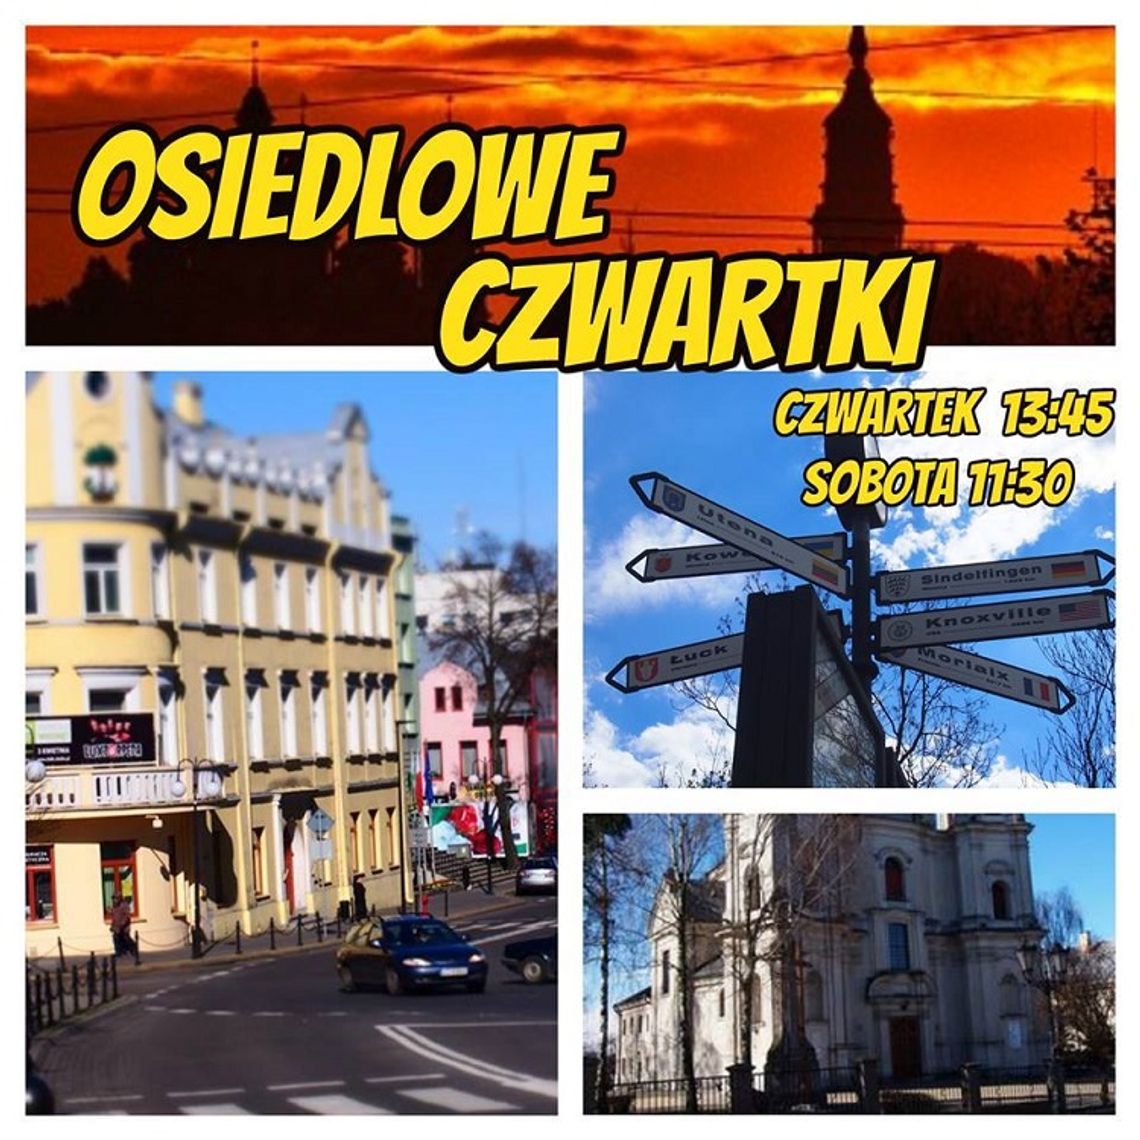 Osiedlowe Czwartki - Osiedle Rejowiecka